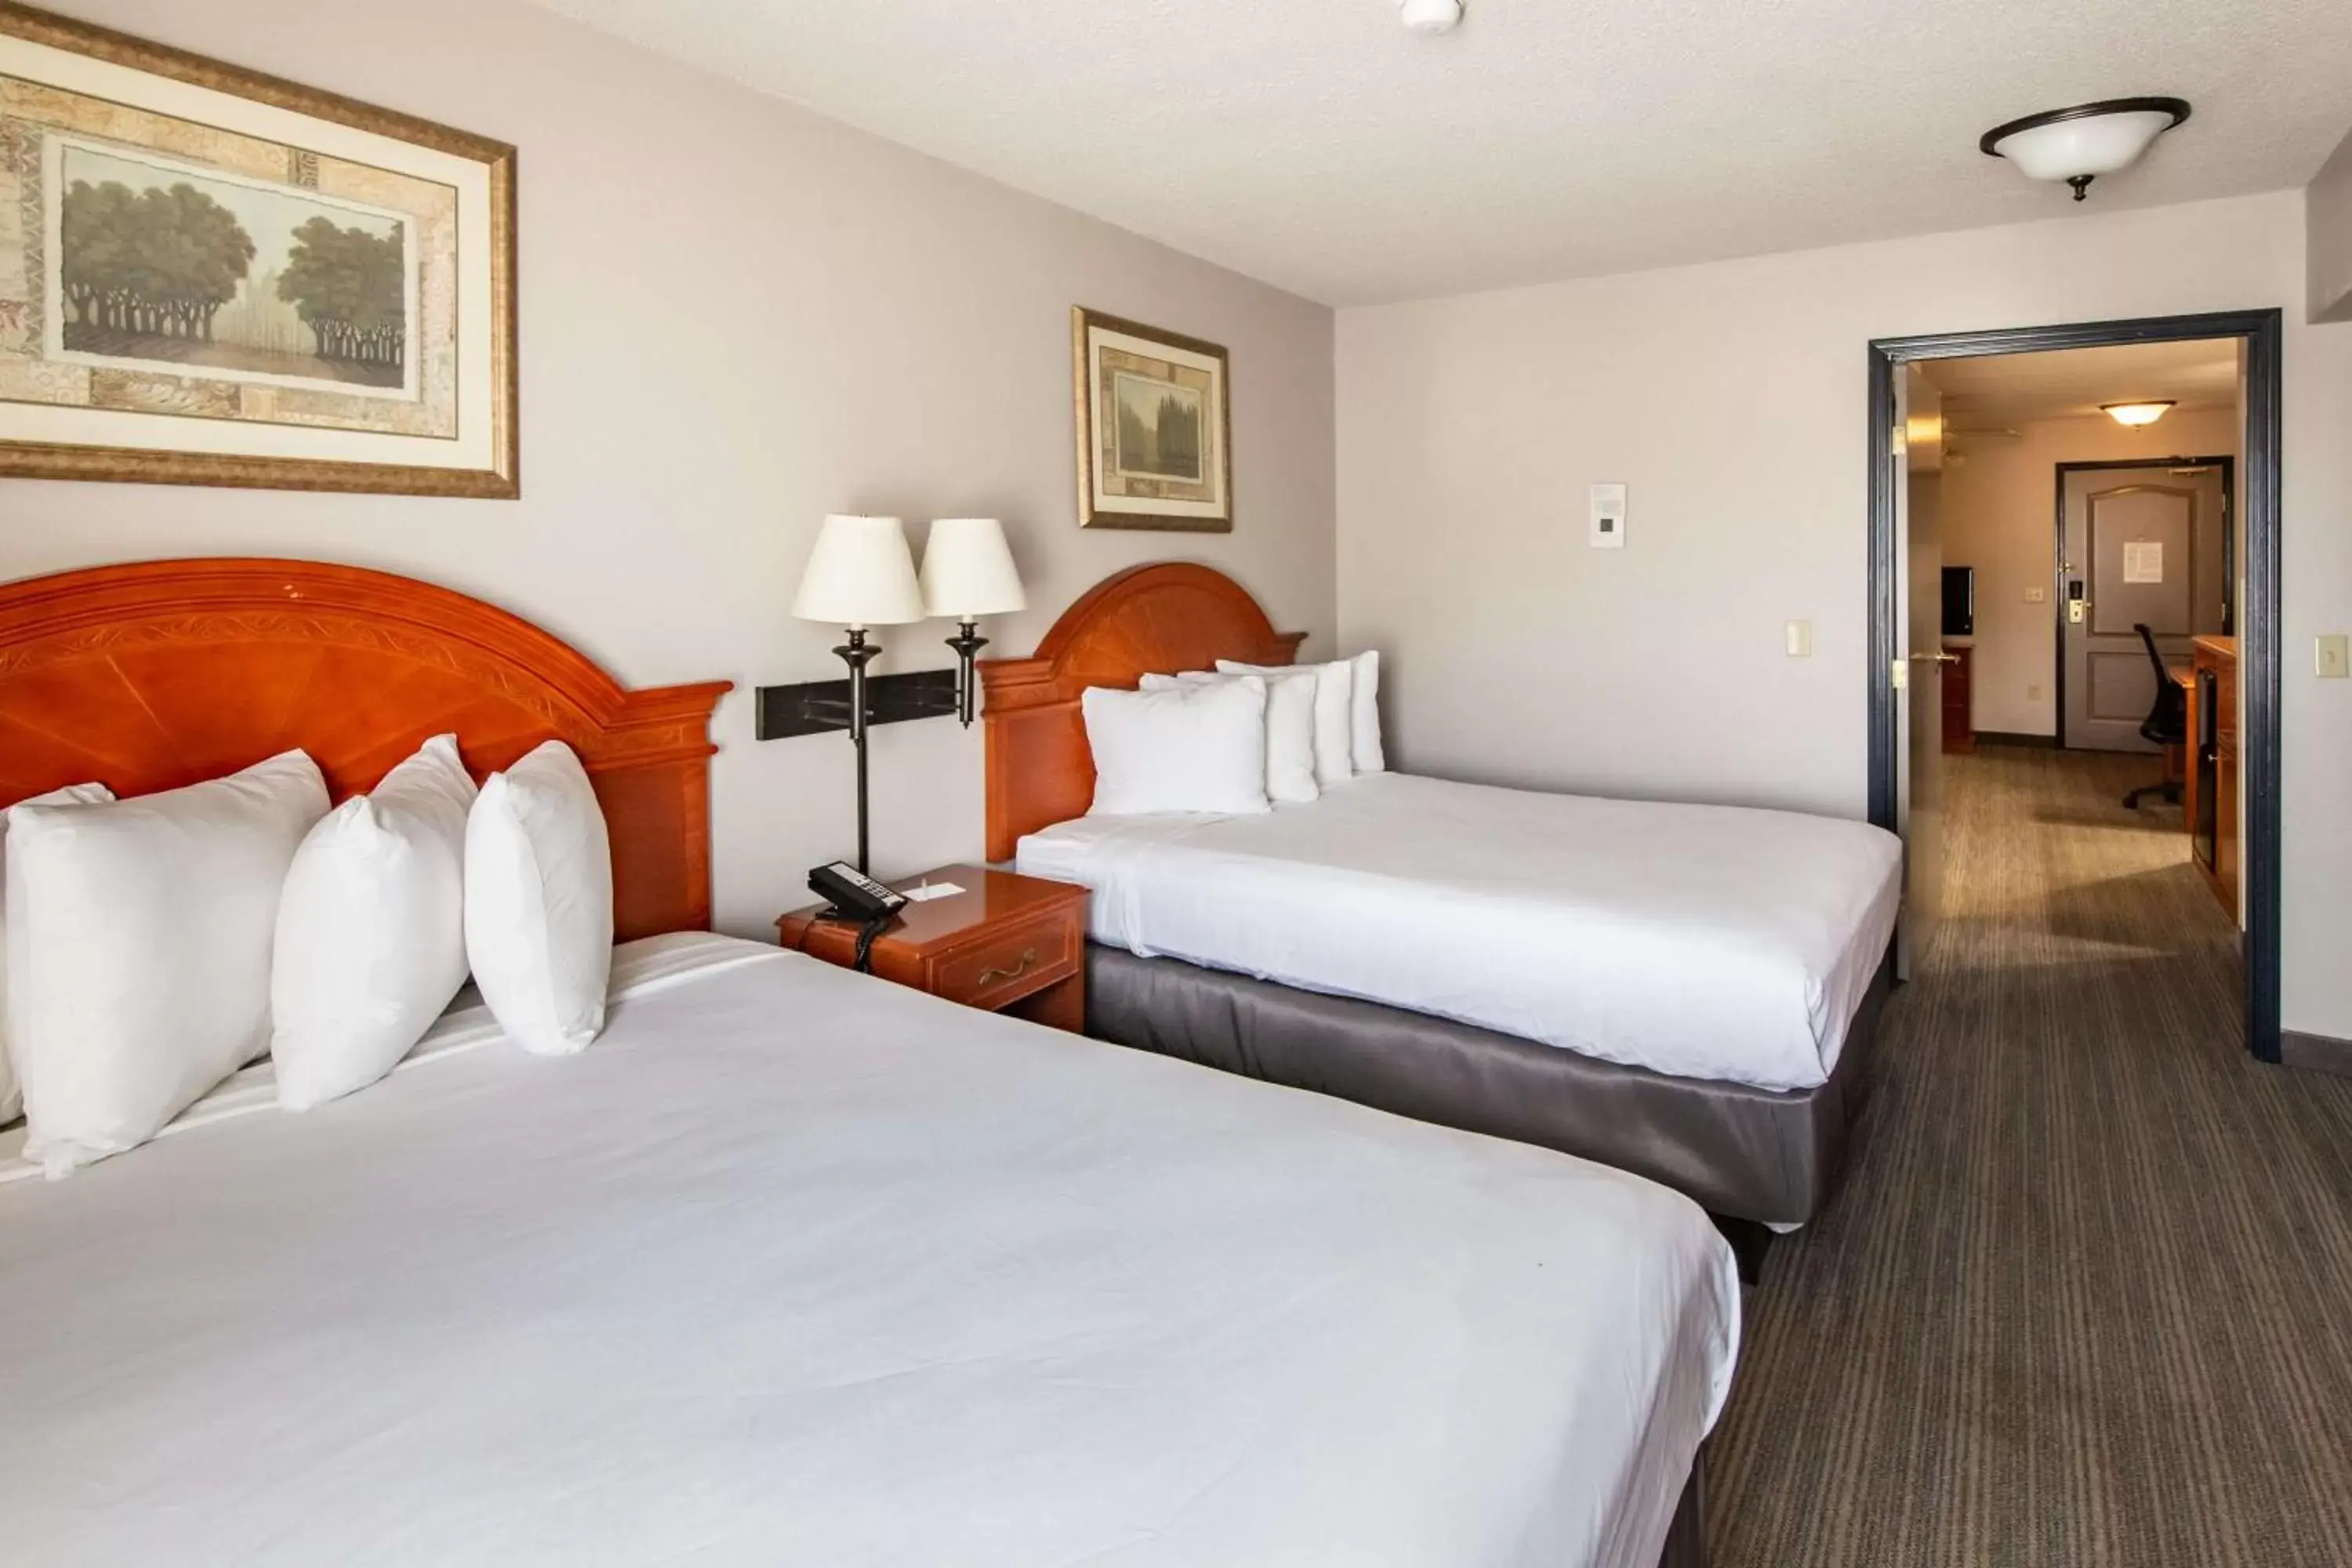 Bedroom, Bed in Country Inn & Suites by Radisson, El Dorado, AR